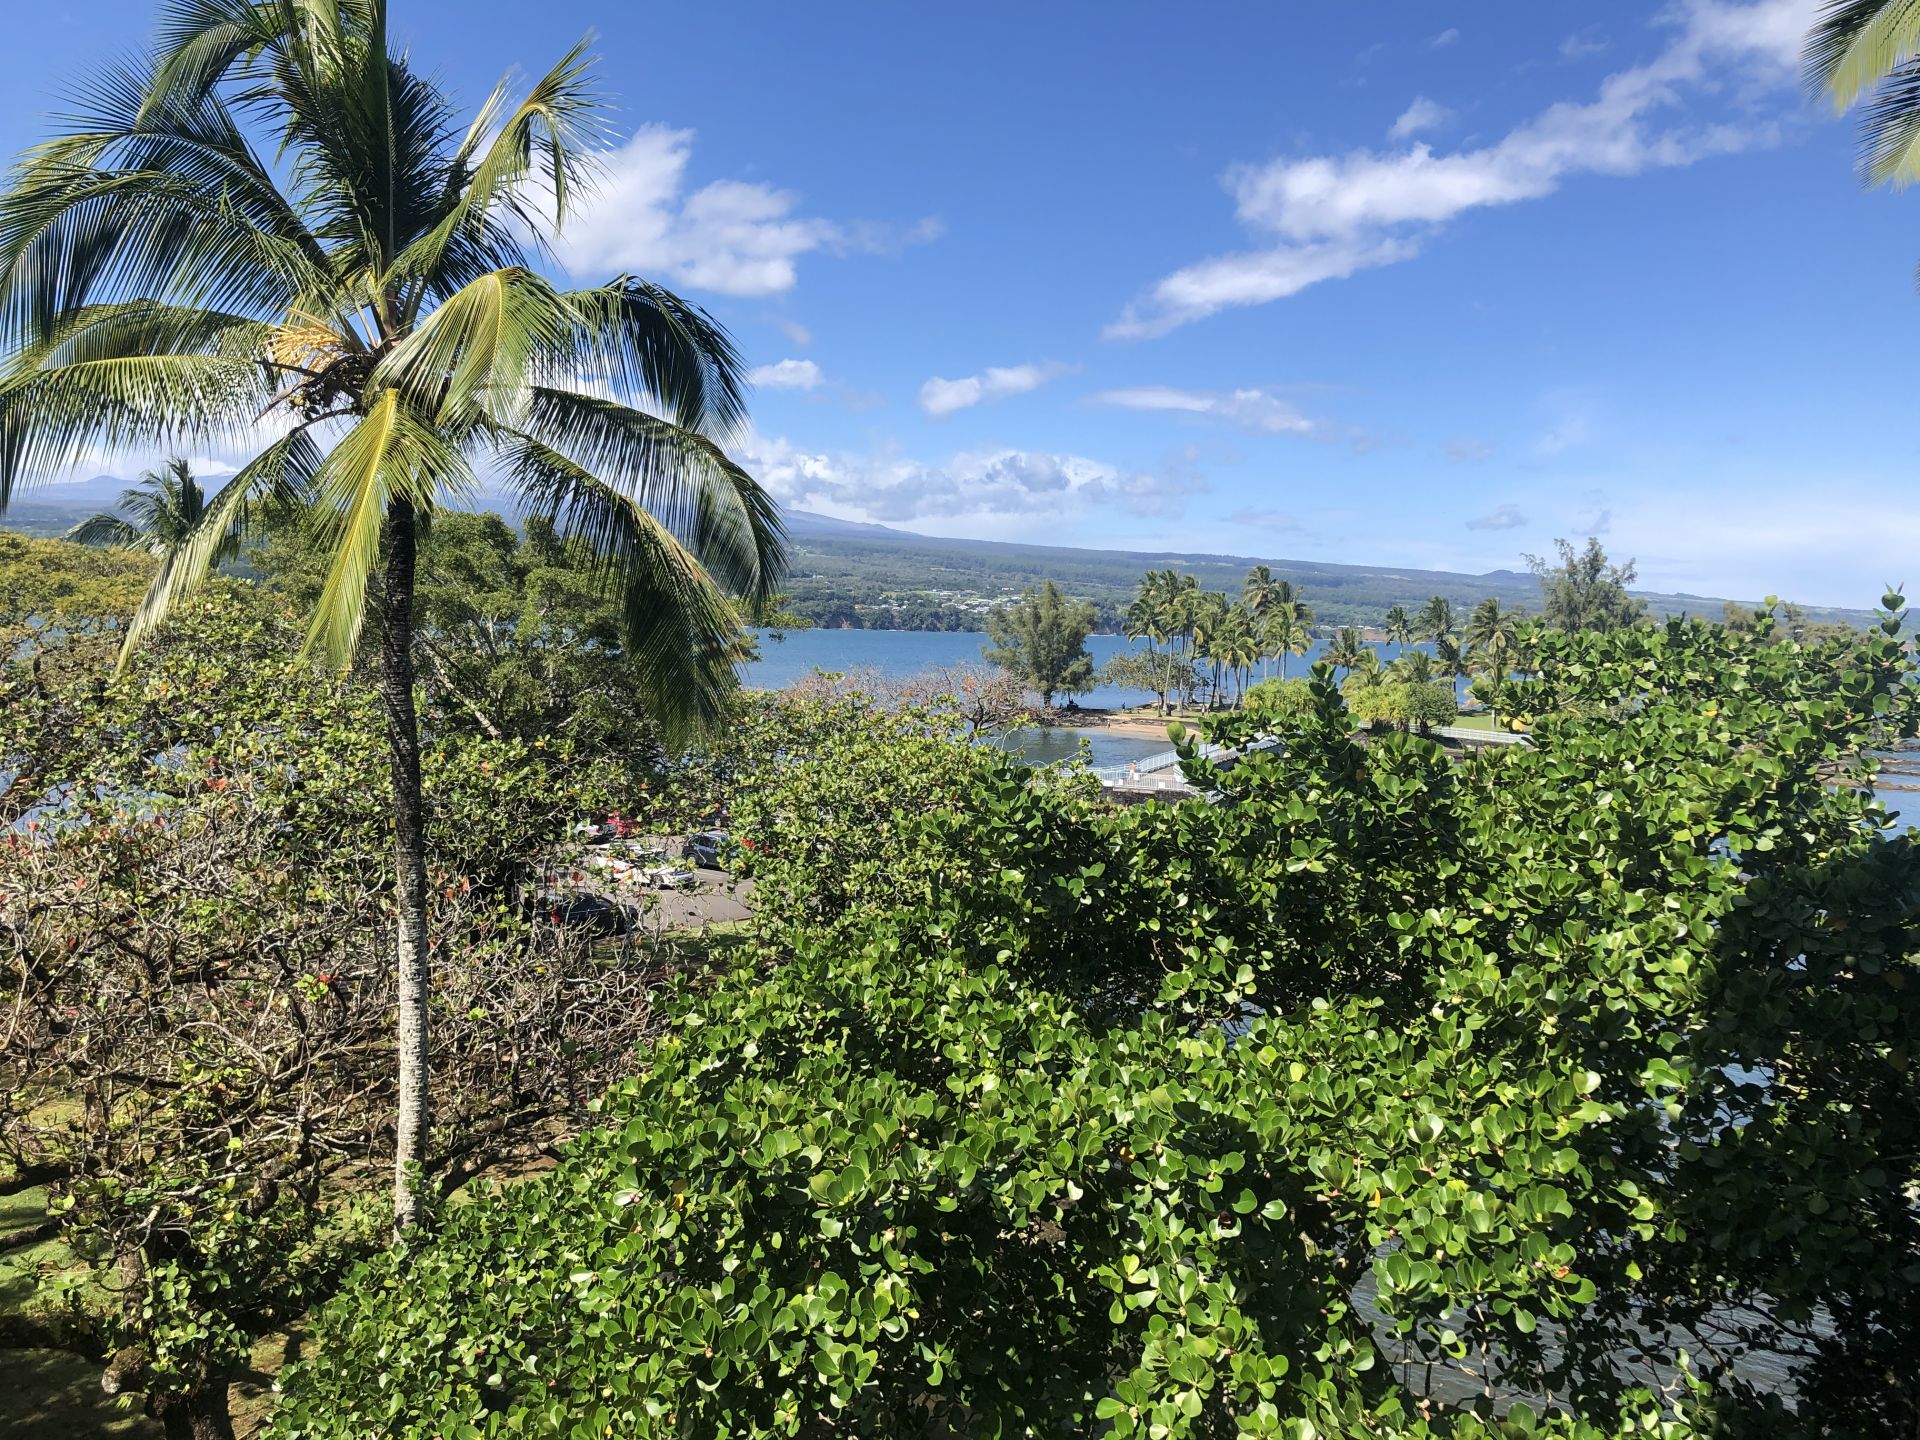 Hawaje wyspy przyrodniczych kontrastów